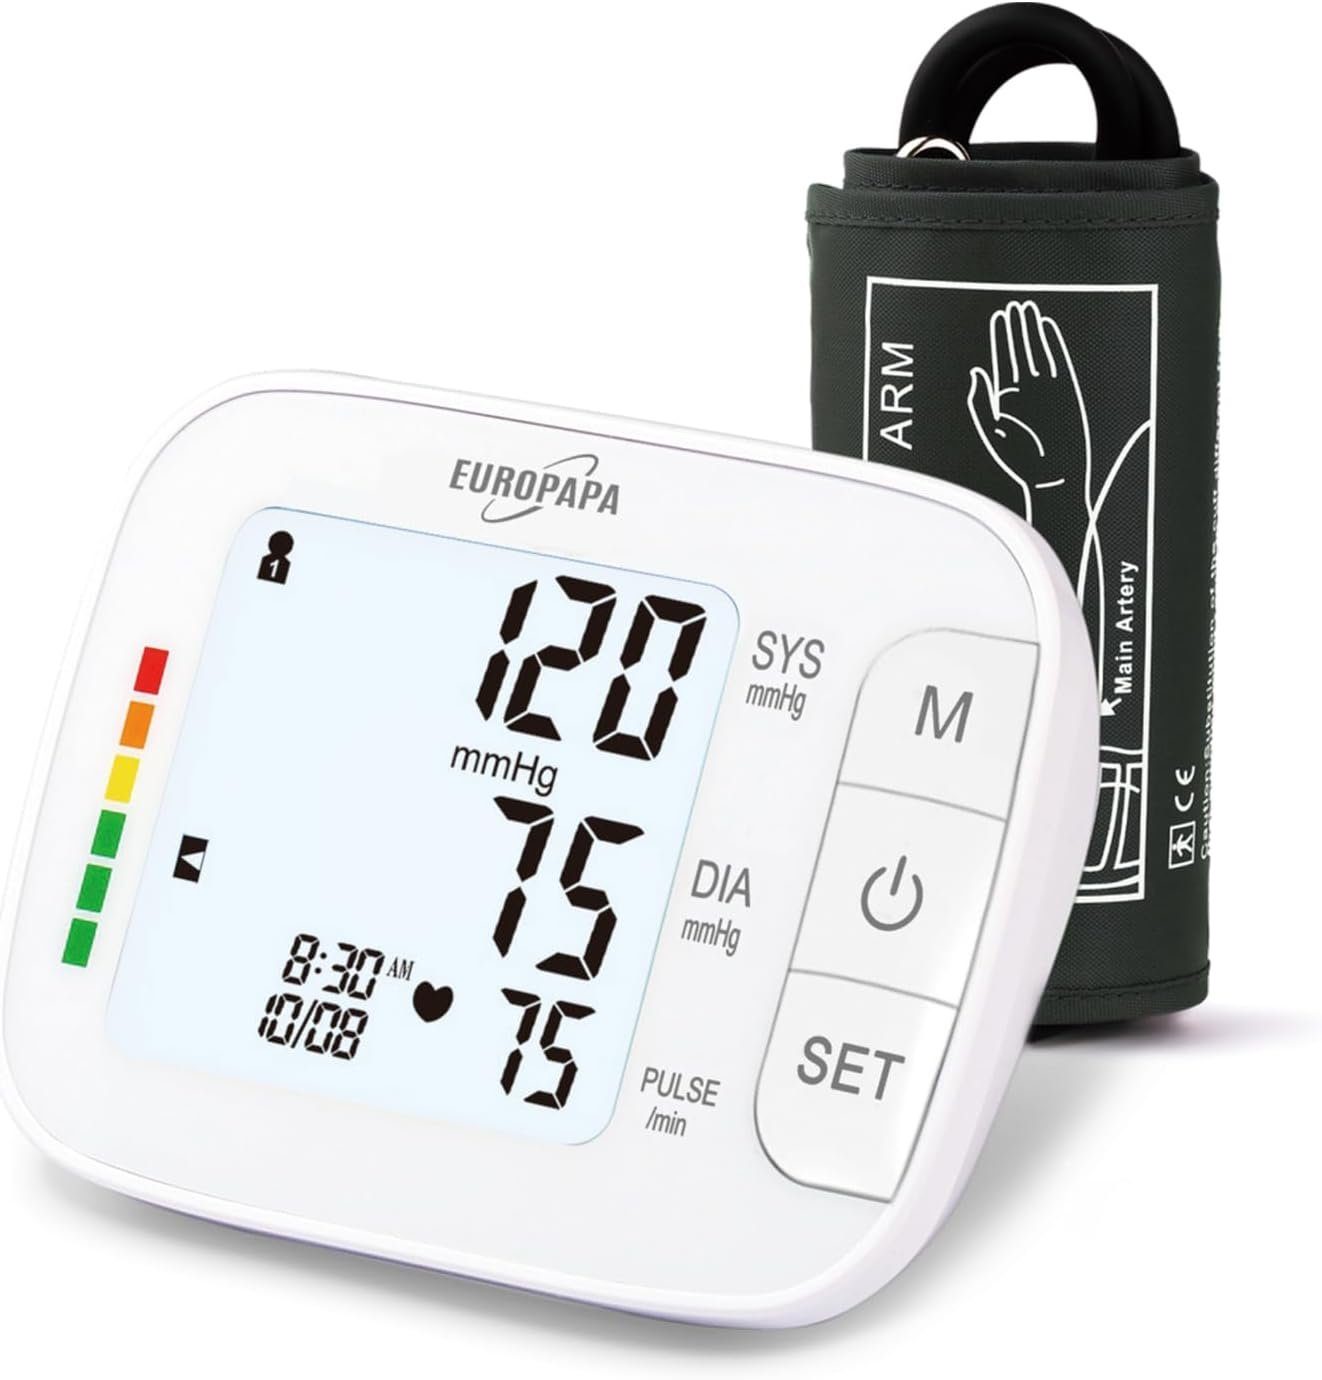 EUROPAPA Oberarm-Blutdruckmessgerät Blutdruckmessgerät Oberarm für den Heimgebrauch, Pulsmessung Blutdruckmessung, mit Große Manschette (22-42cm), 2 * 60 Speicher, Dual-User